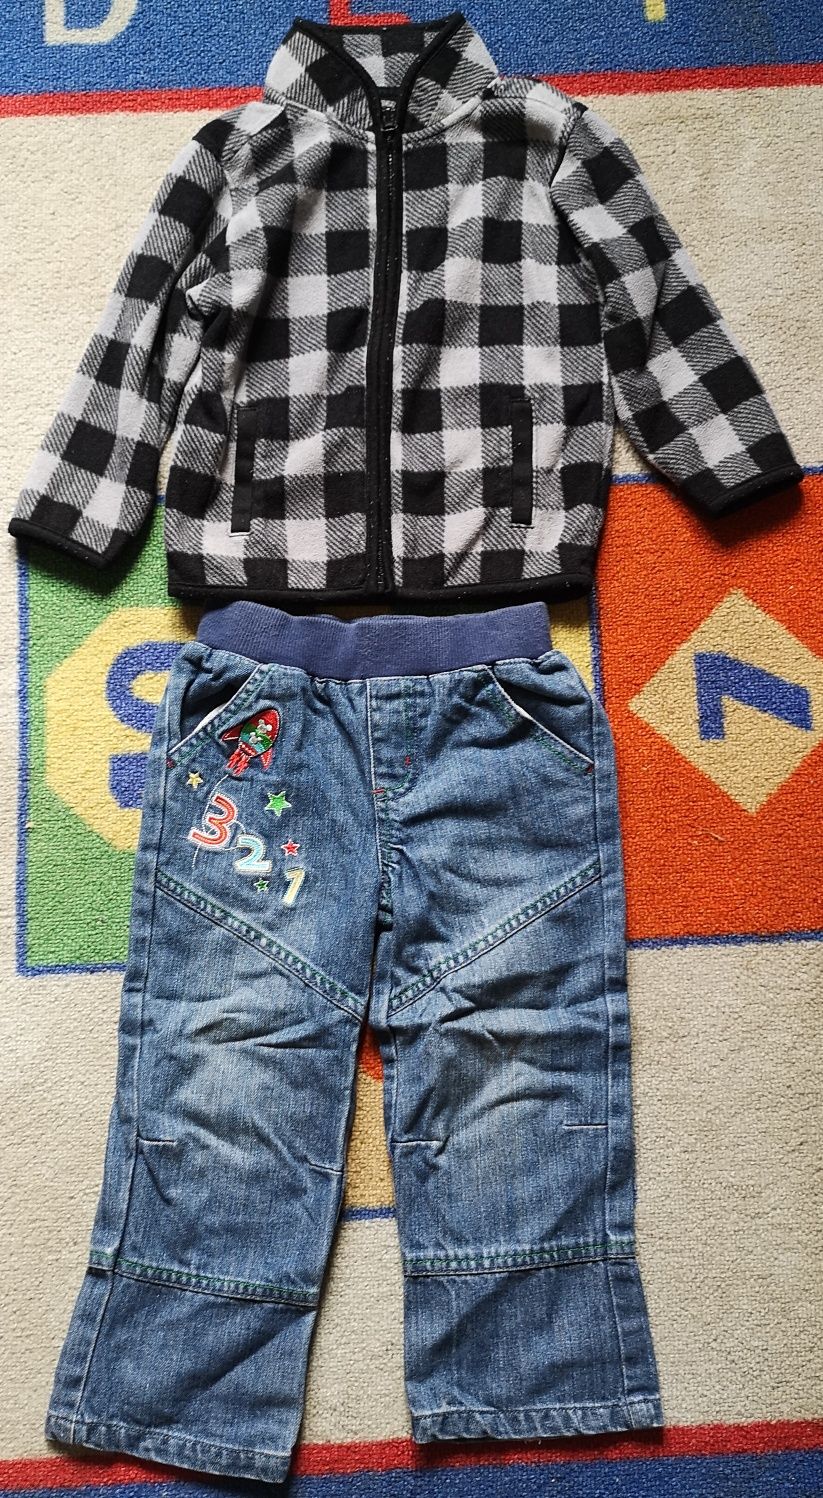 Baby Gap polarek i Disney spodnie jeansowe